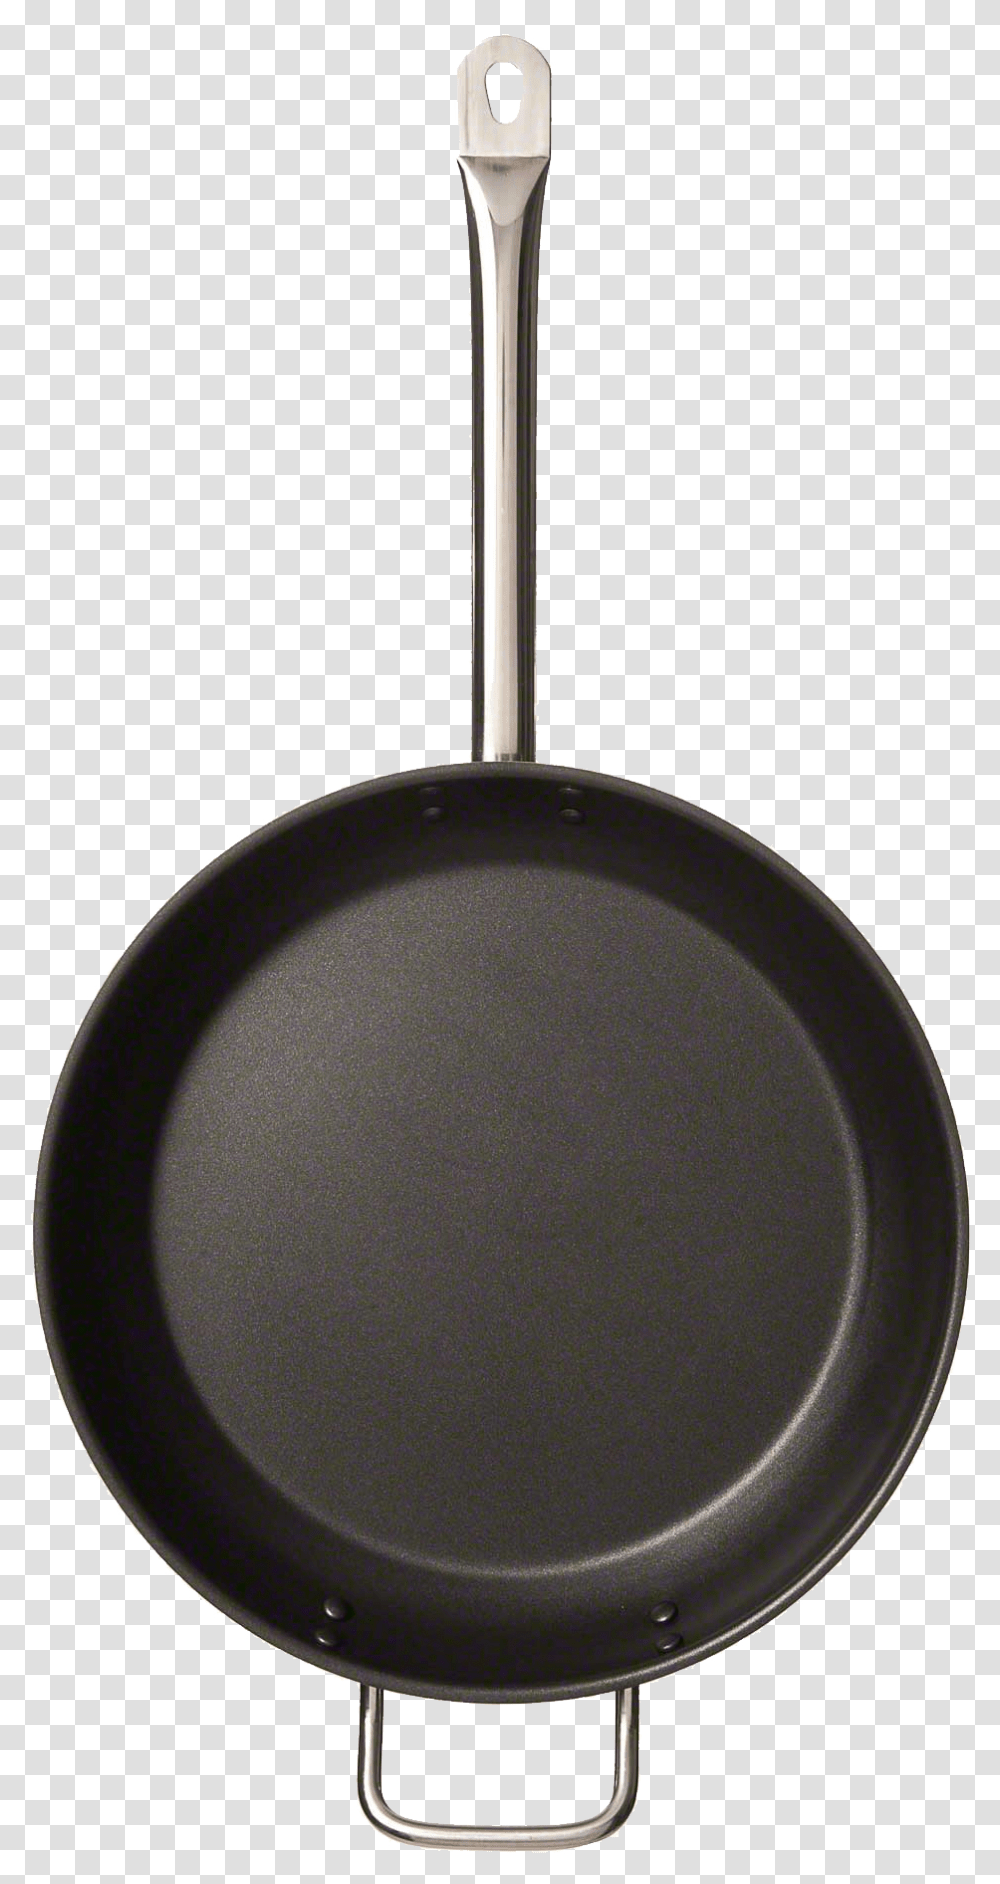 Frying Pan, Tableware, Wok, Lamp Transparent Png